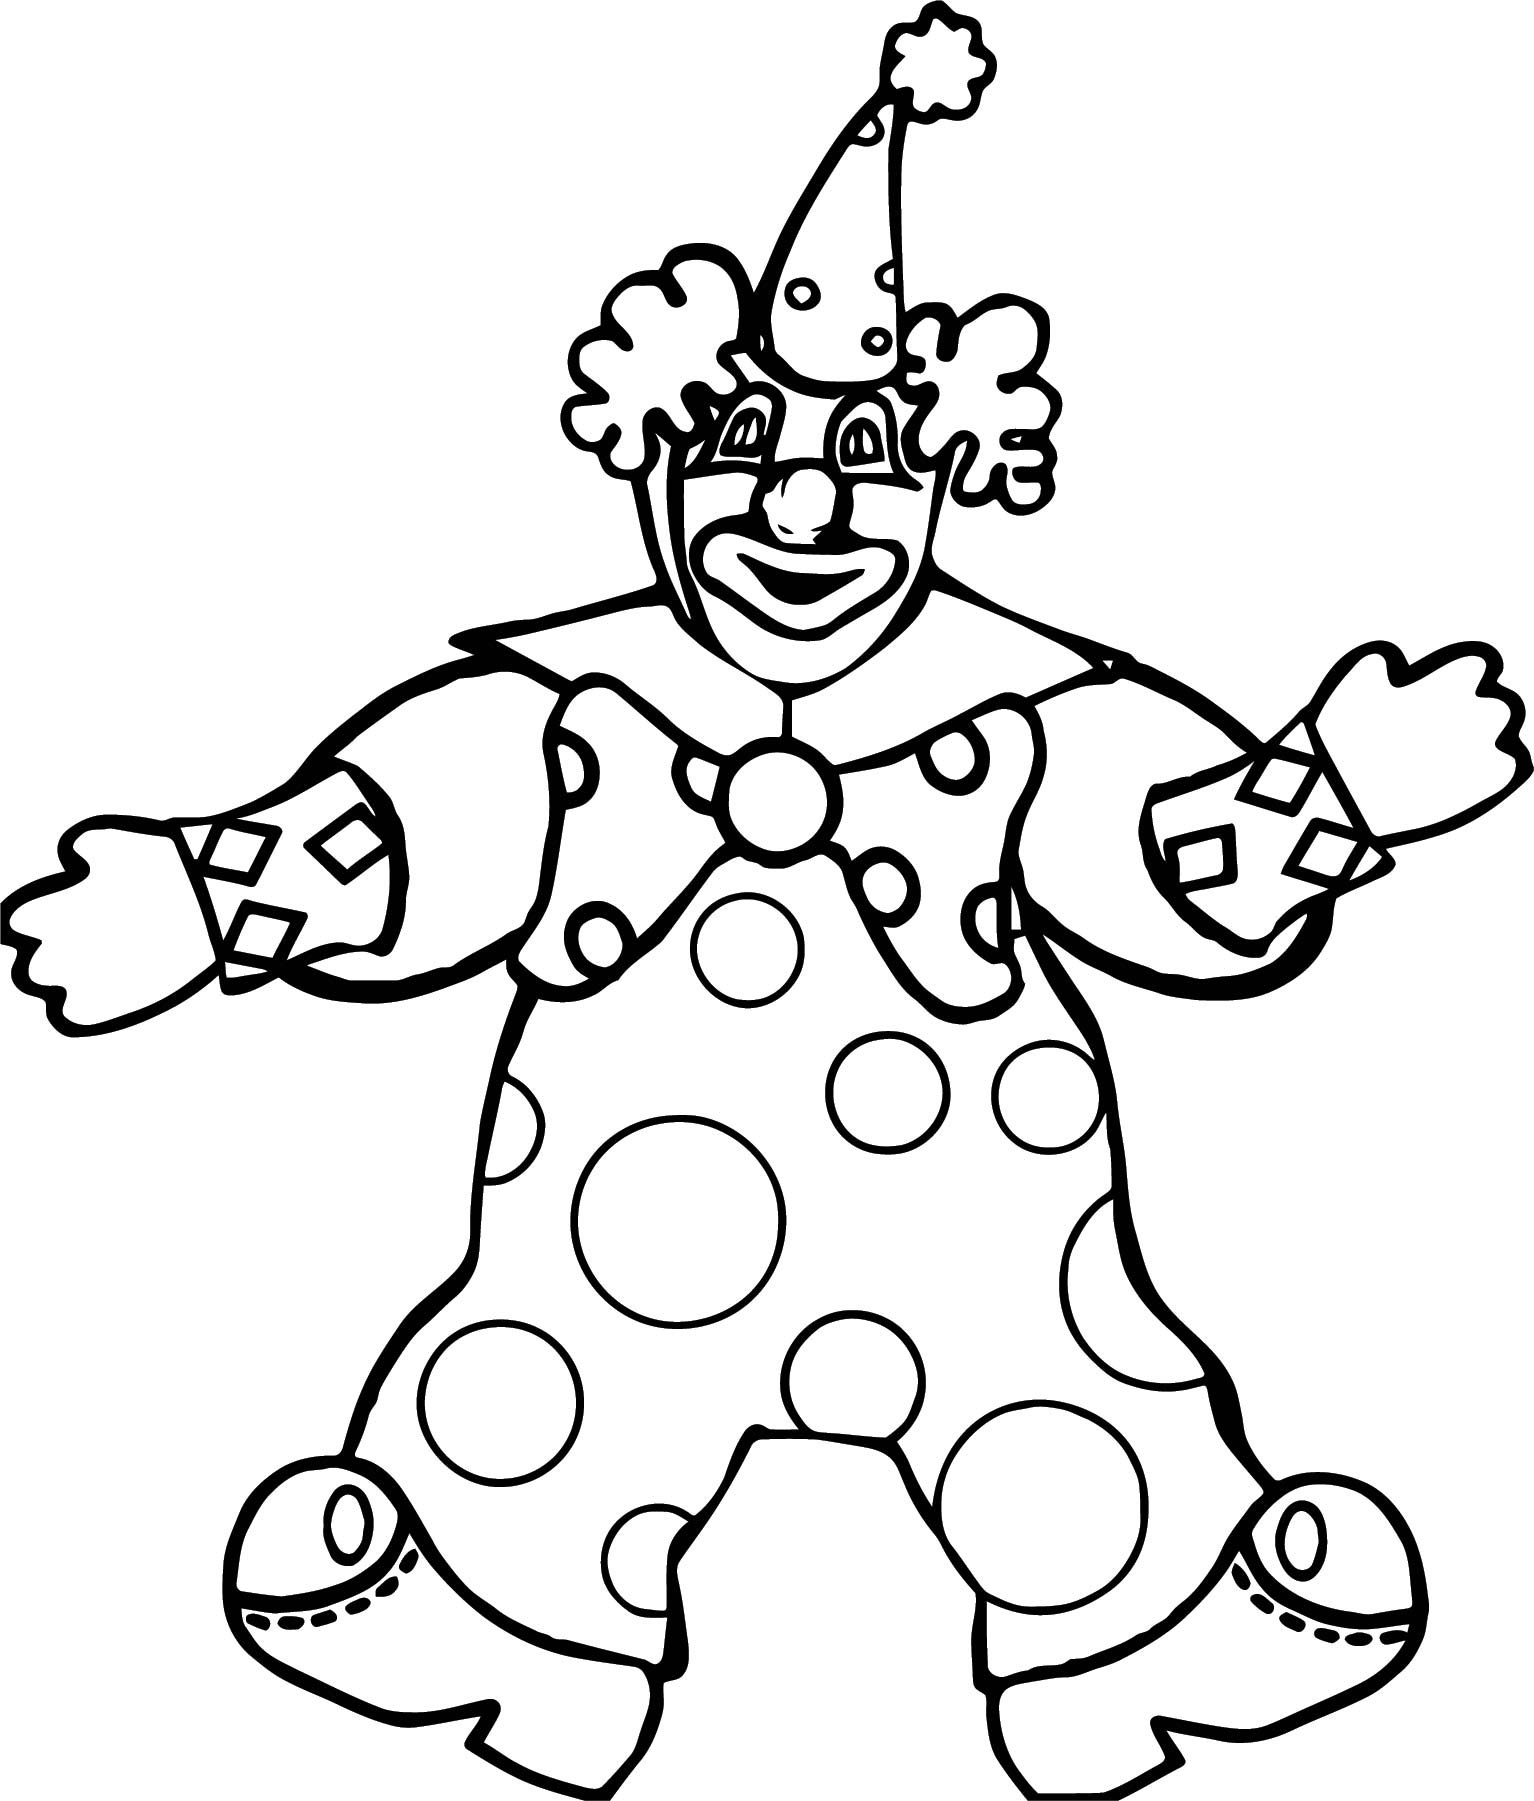 Клоуны раскраска для детей 5 лет